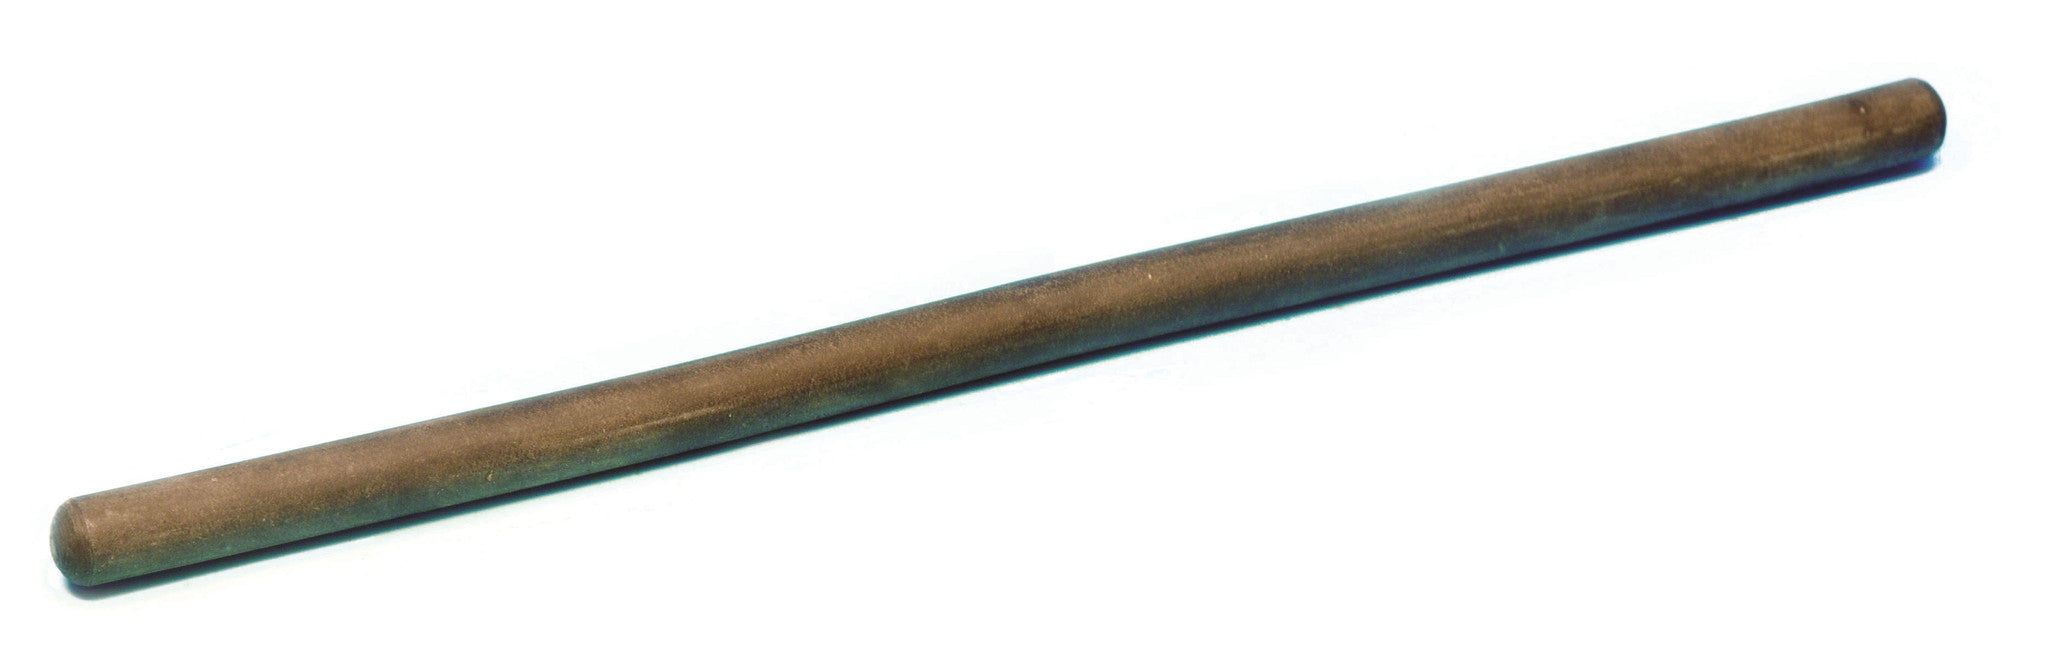 Ebonite Friction Rod, 30cm